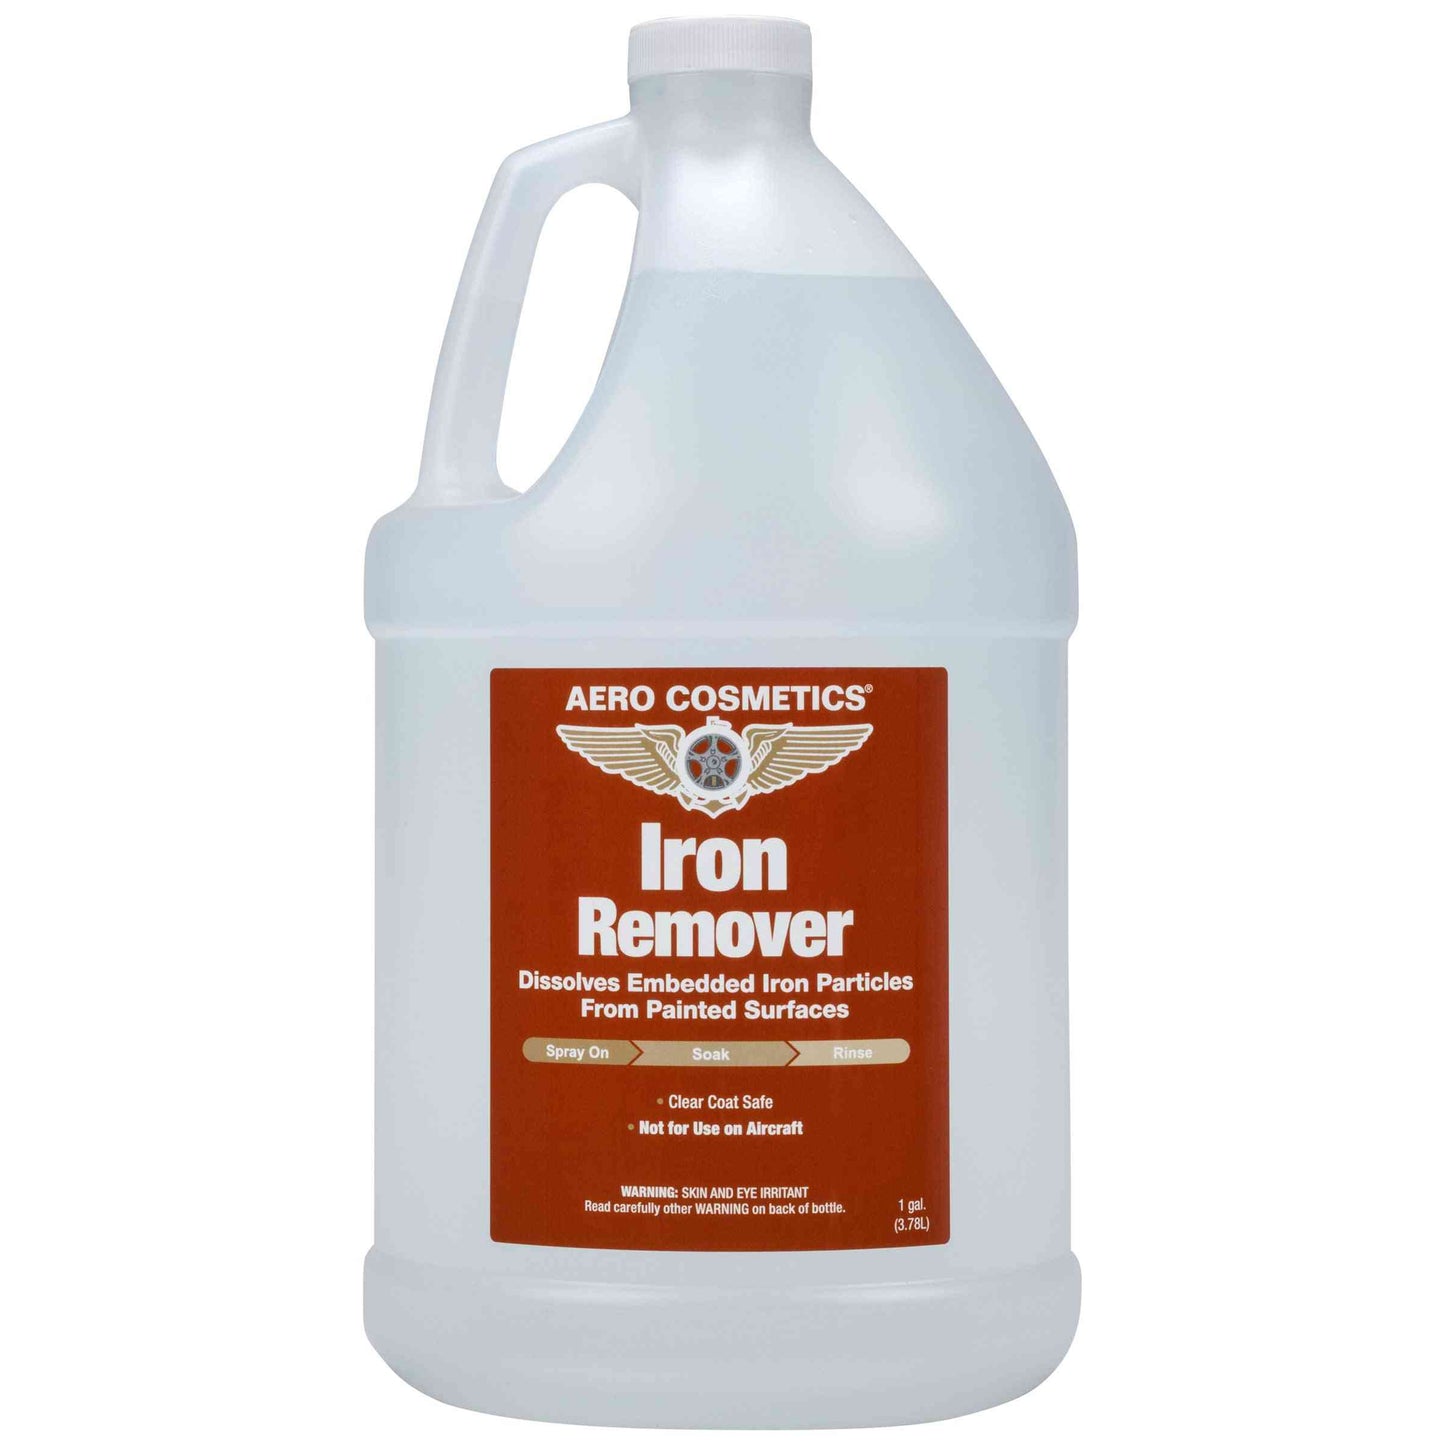 Iron Remover 1 Gallon - Iron Particles Dissolver